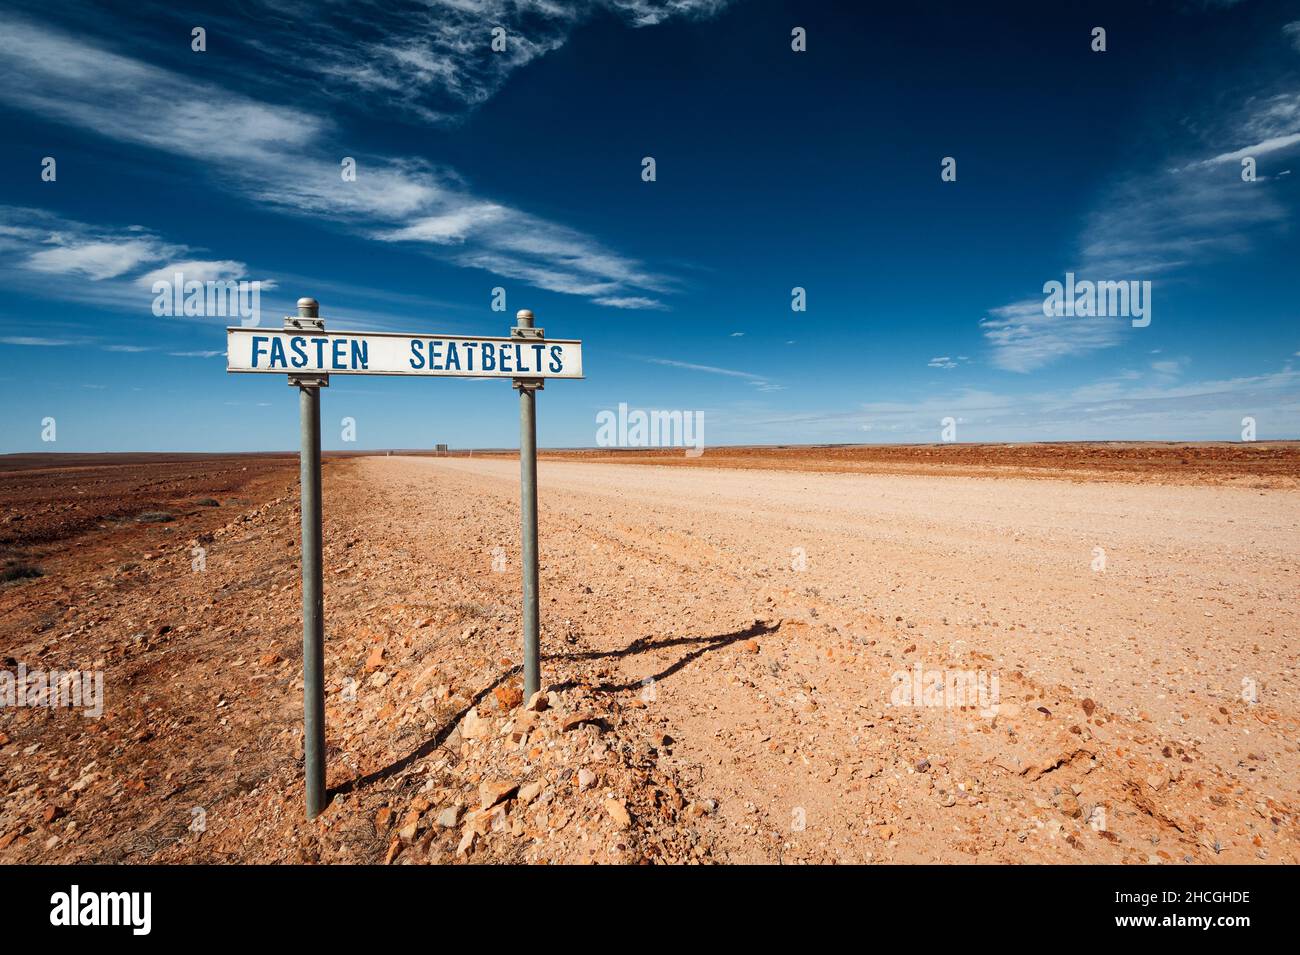 Befestigen Sie das Schild Seatbelt Road an einer Schotterstraße im Outback von Queensland. Stockfoto